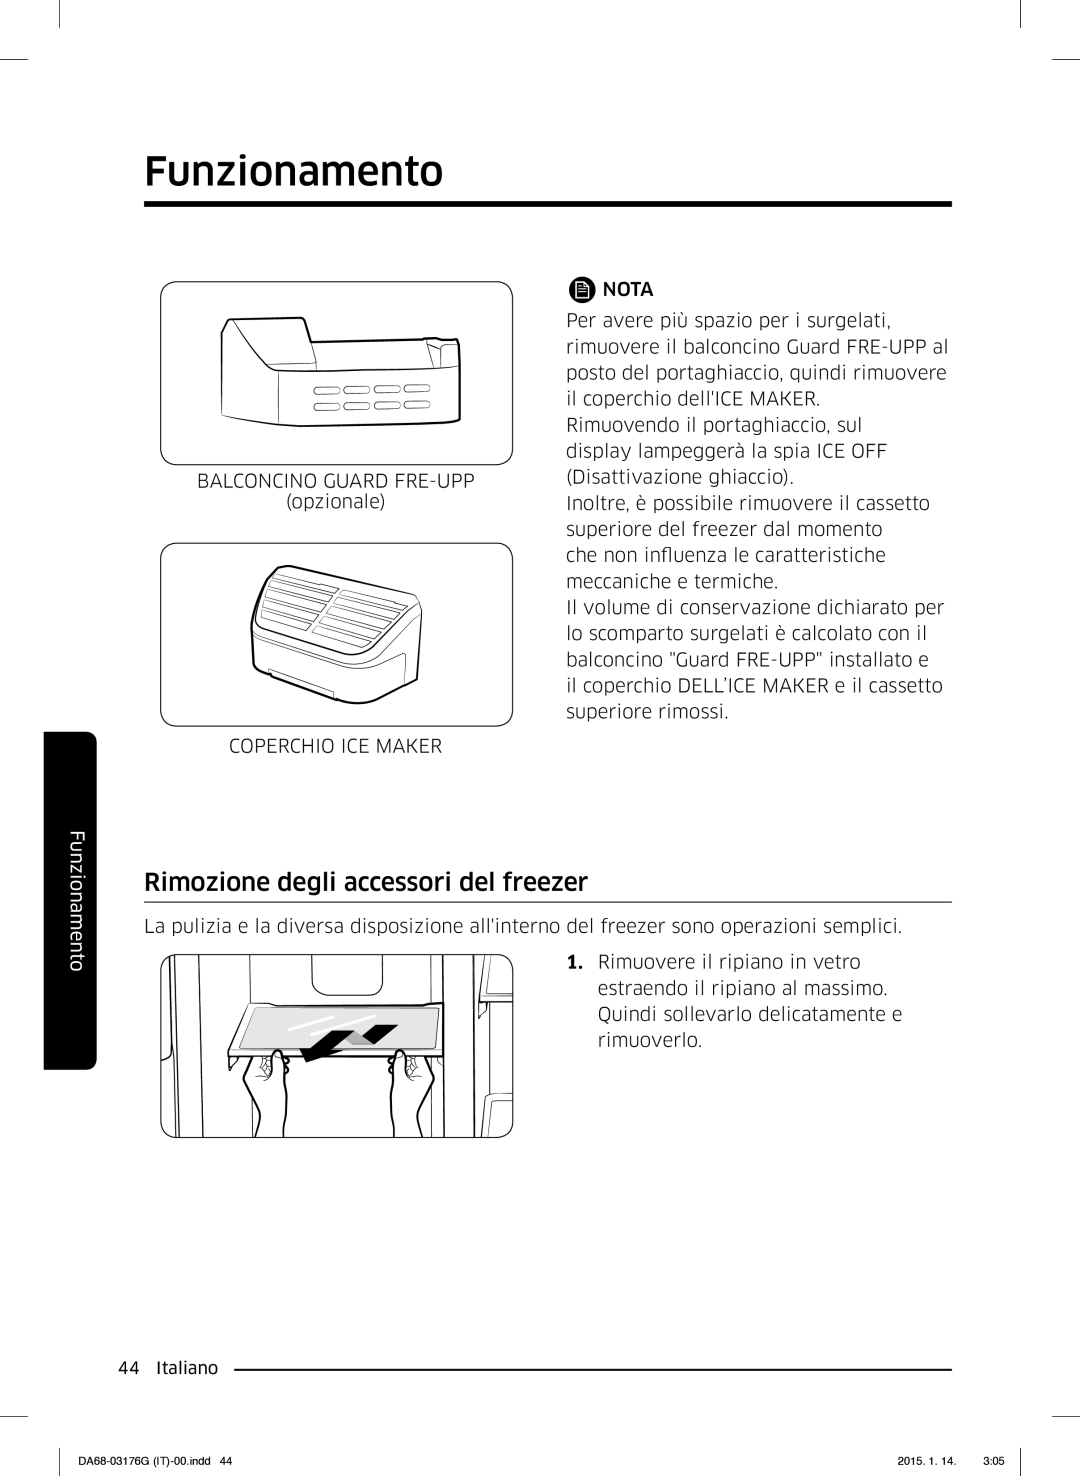 Samsung RH56J69187F/EF manual Rimozione degli accessori del freezer, Coperchio ICE Maker Nota 